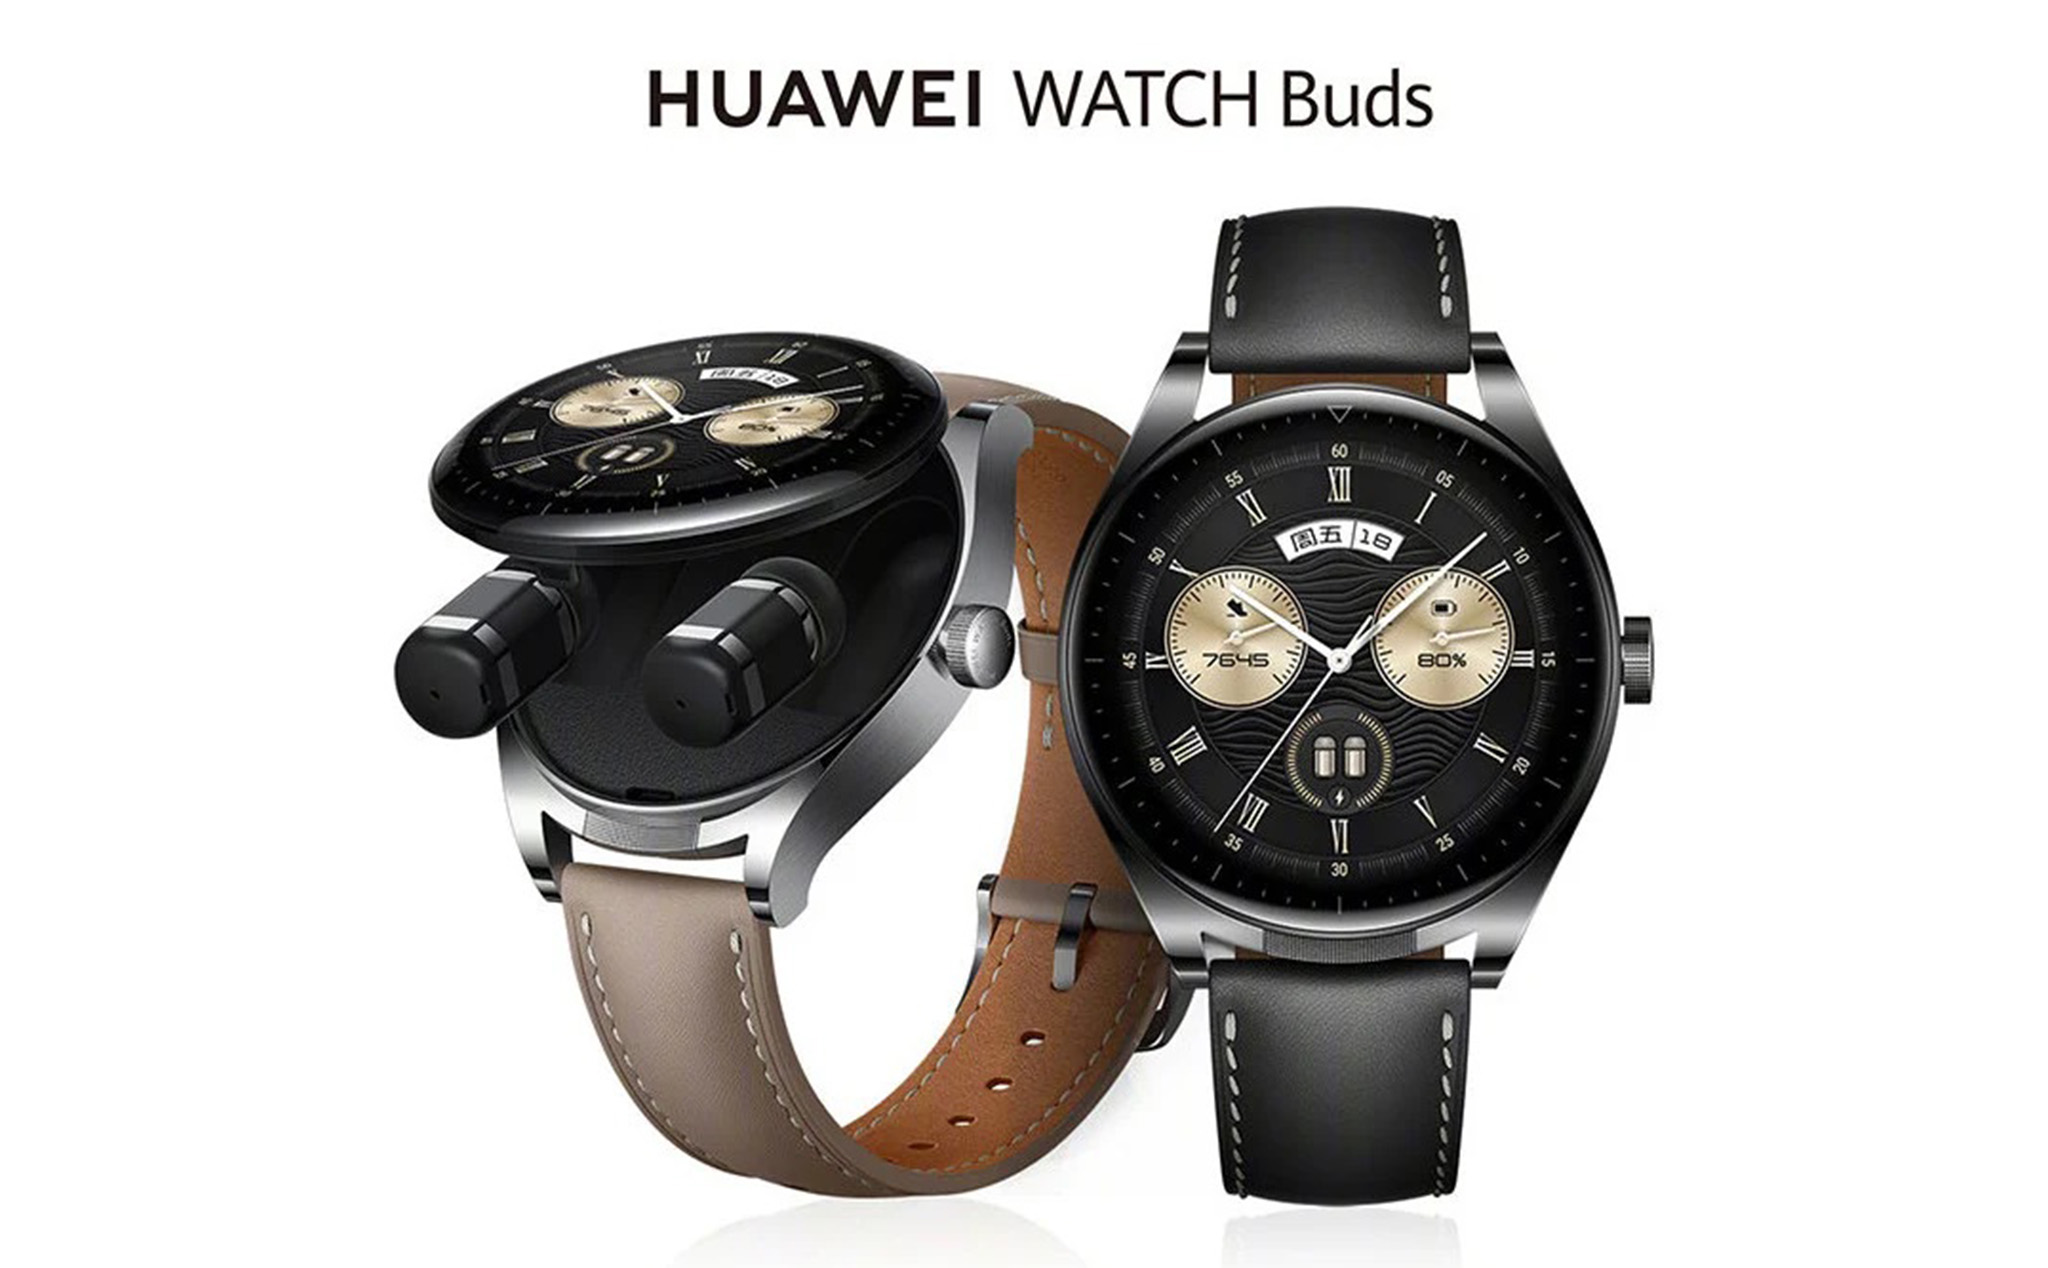 HUAWEI ra mắt Watch Buds: smartwatch tích hợp tai nghe bên trong, giá khoảng 429 đô